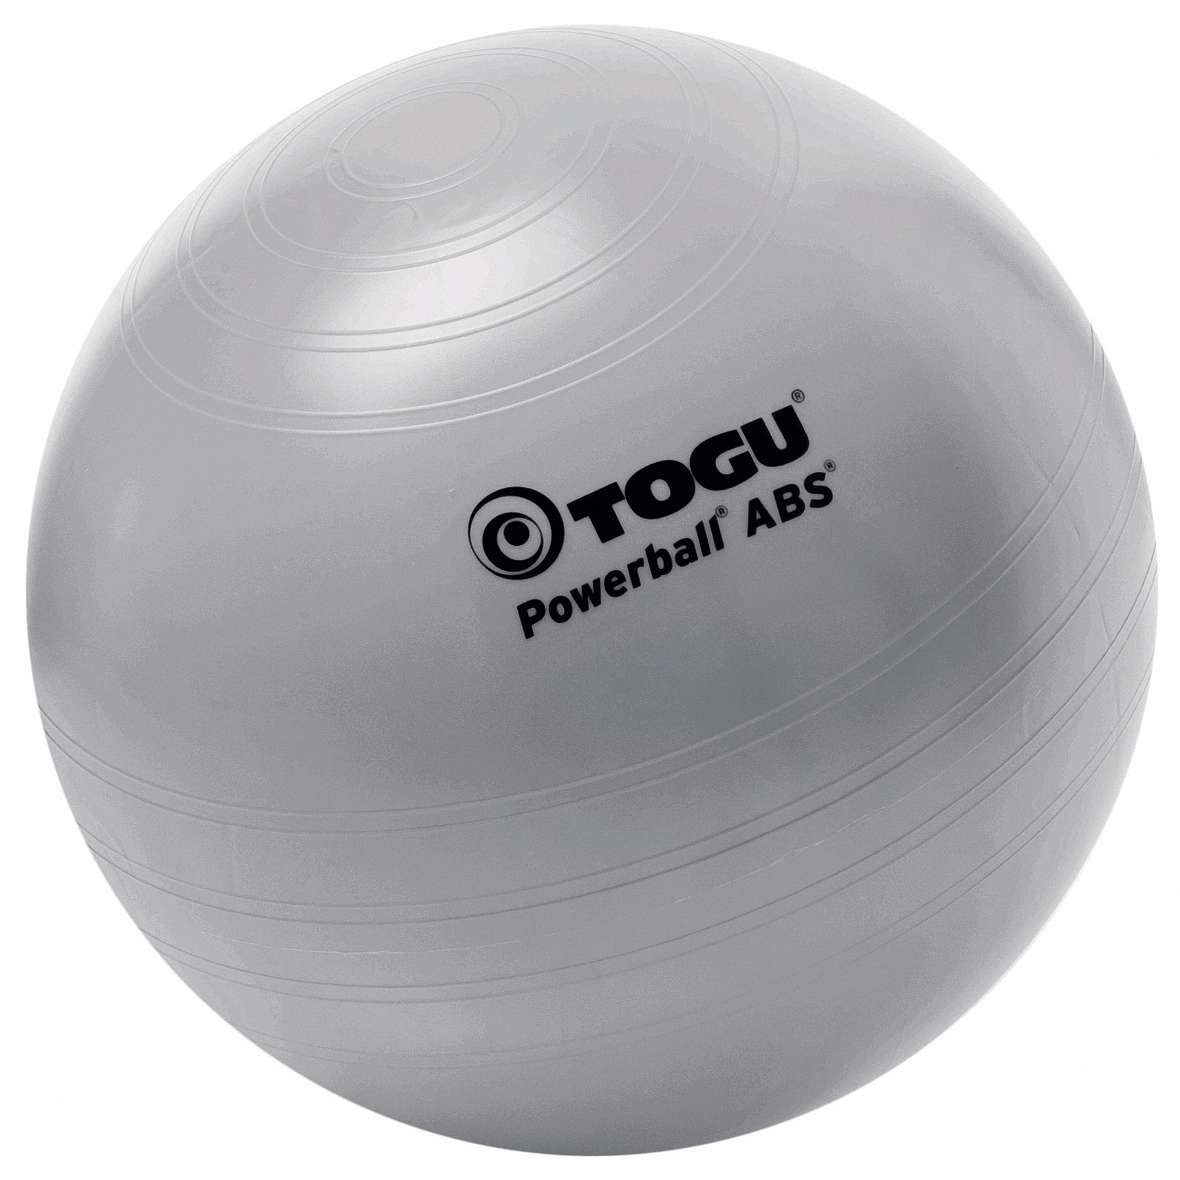 Togu Powerball "ABS", ø 75 cm von Togu